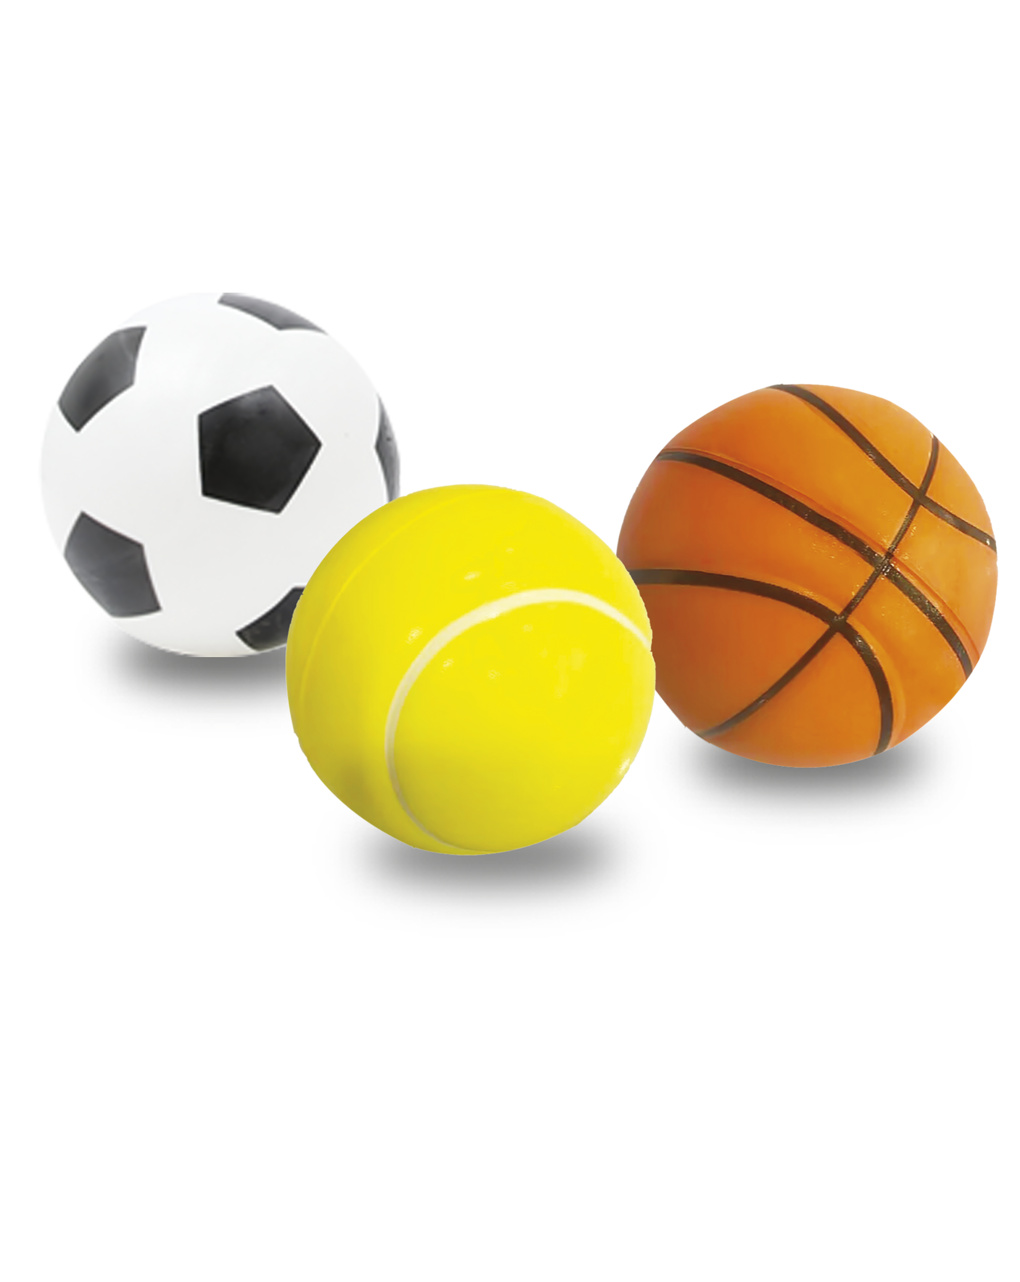 Sport balls - sun&sport